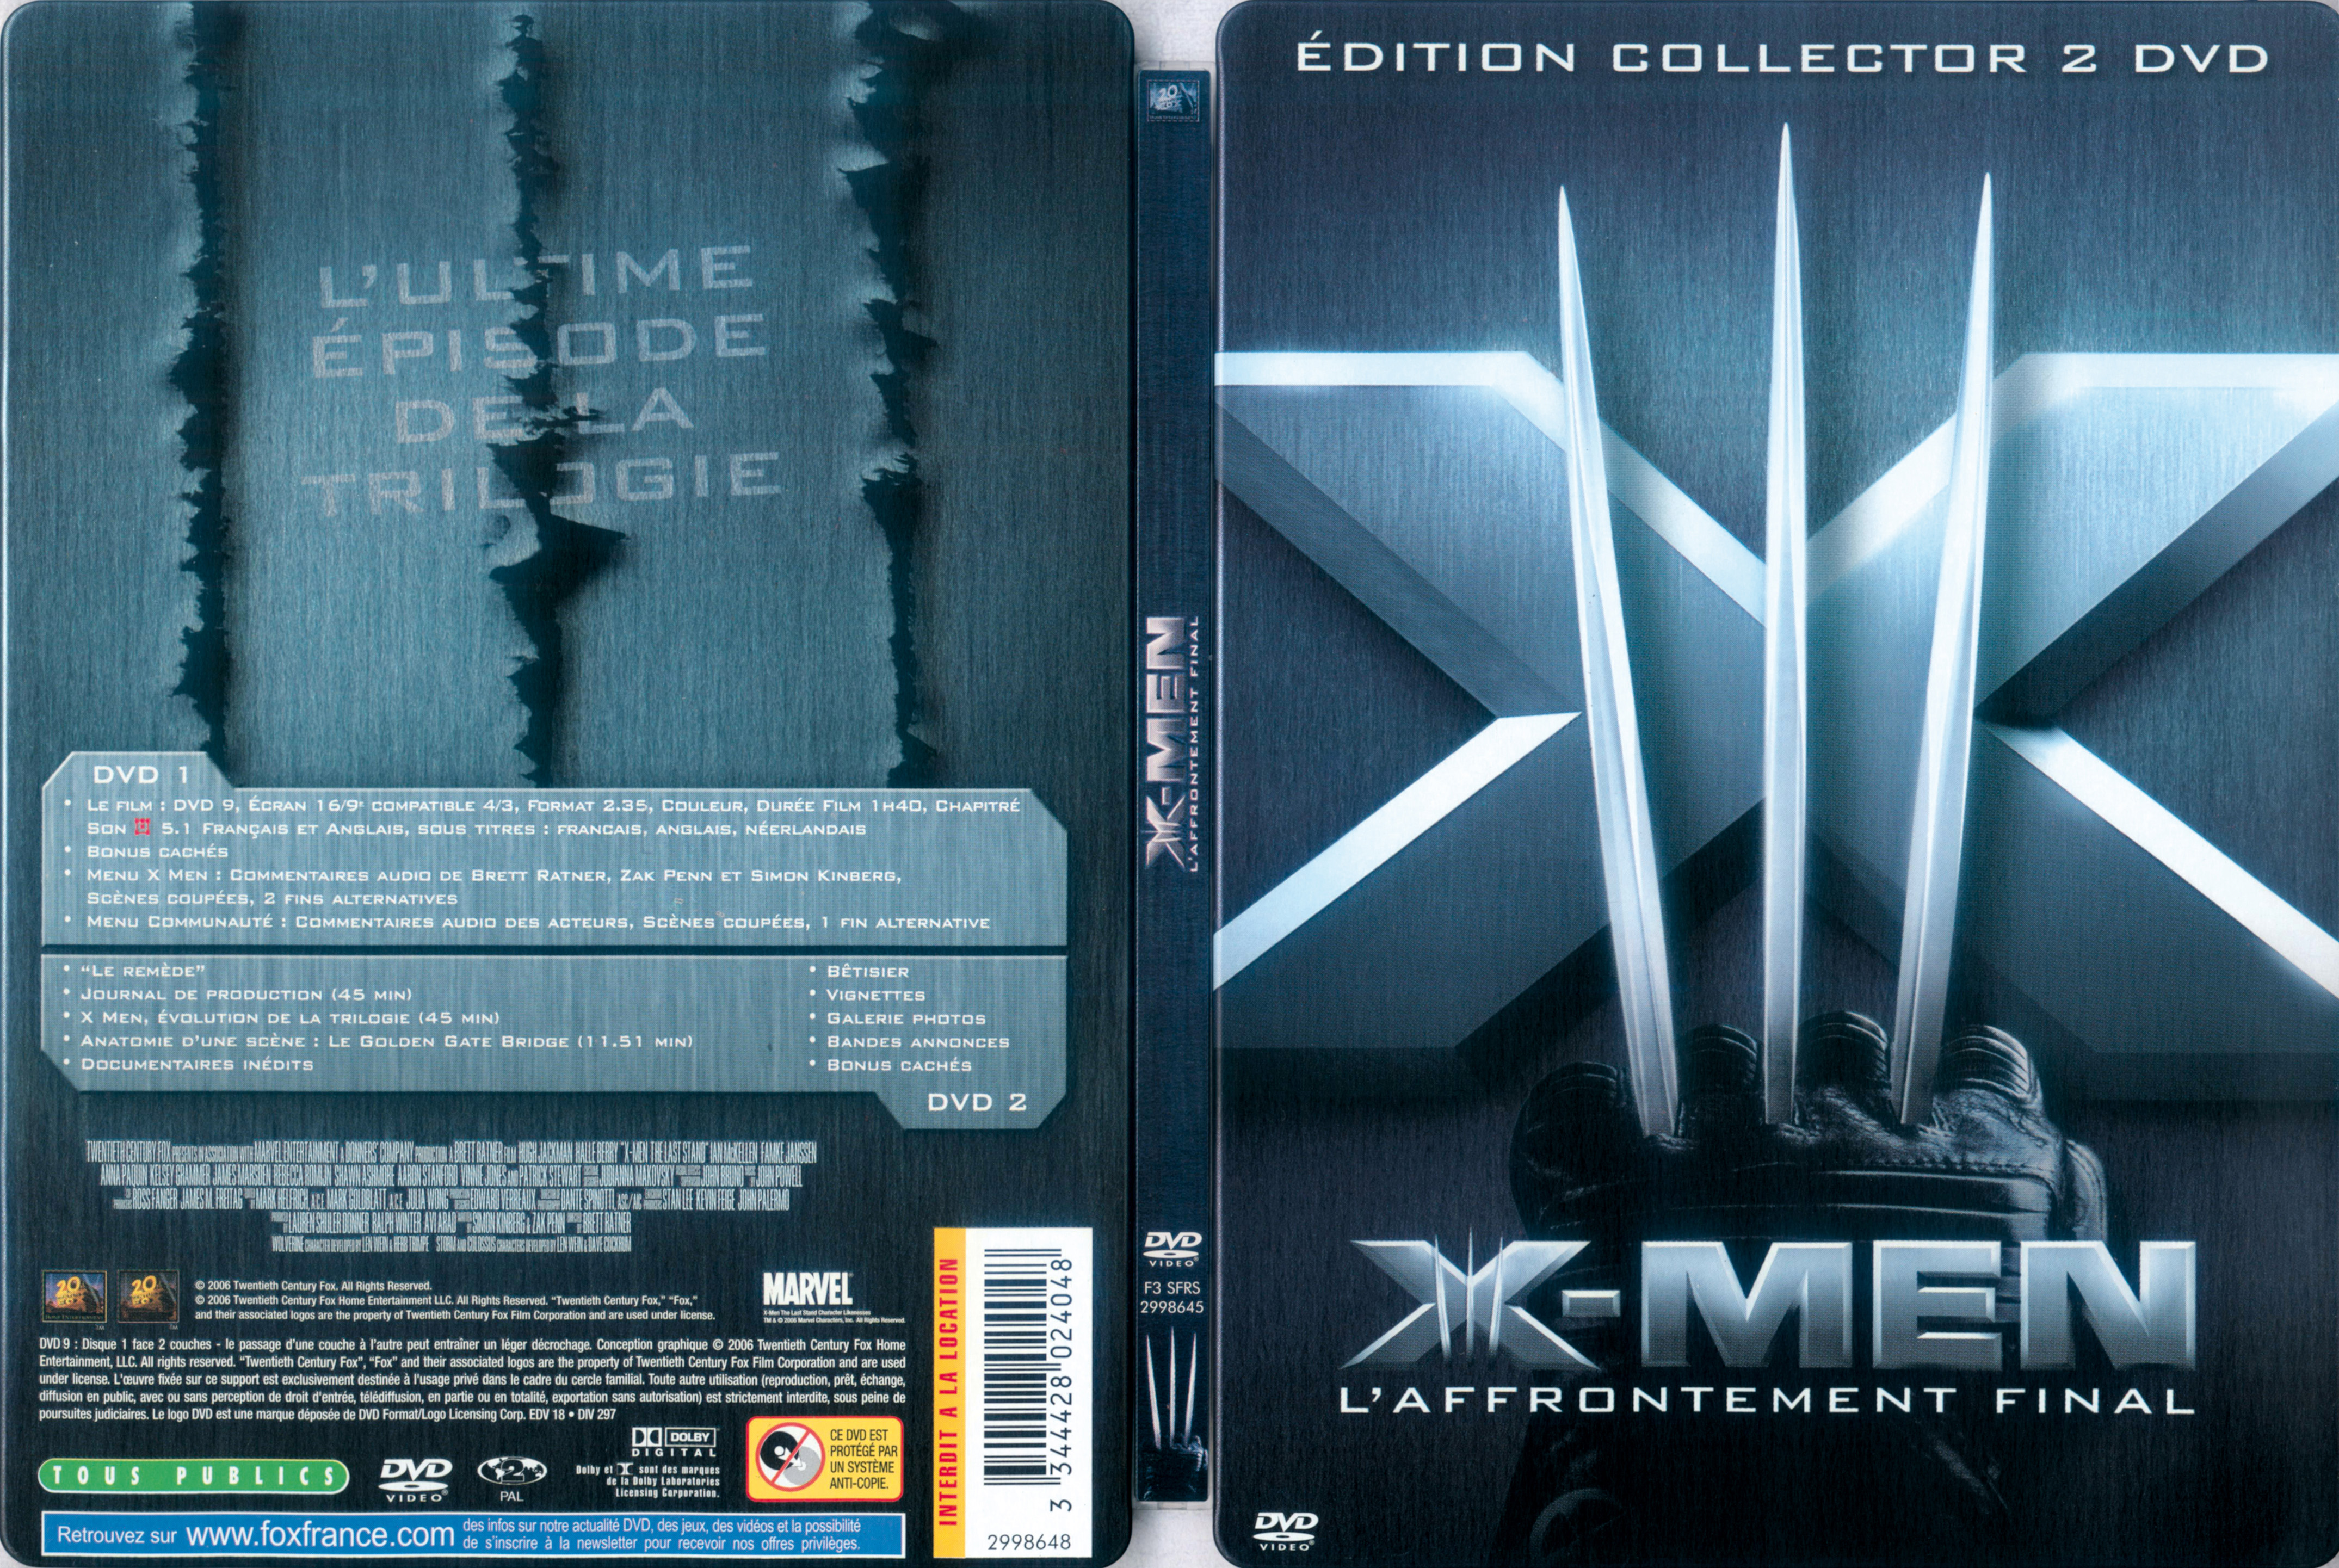 Jaquette DVD X-men 3 v3